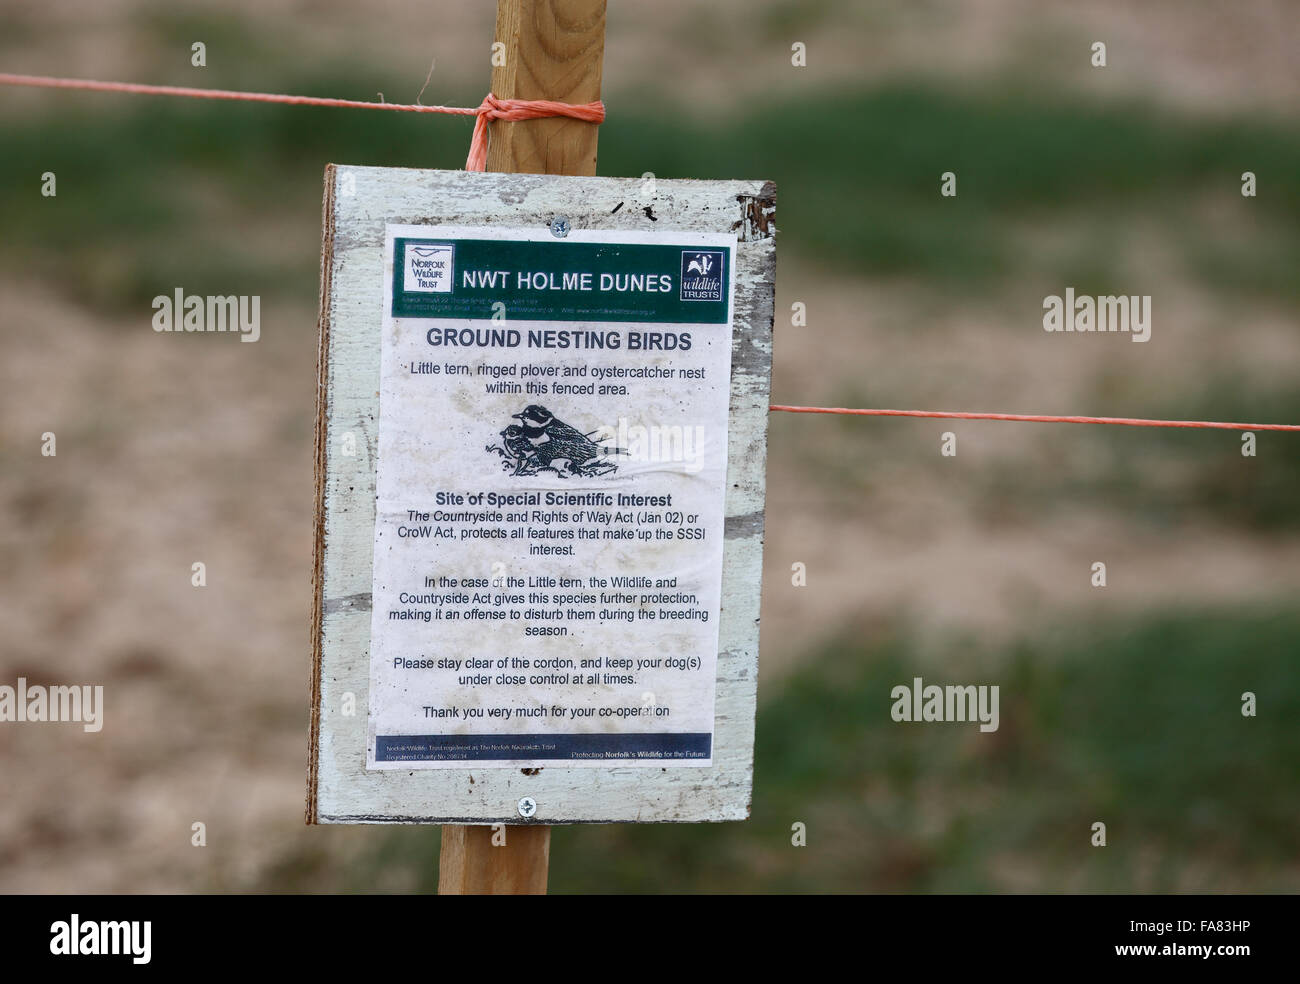 Warnschild im Holme Dünen Naturreservat in Norfolk Warnung vor der Anwesenheit von Boden nisten Vögel und fern zu halten. Stockfoto